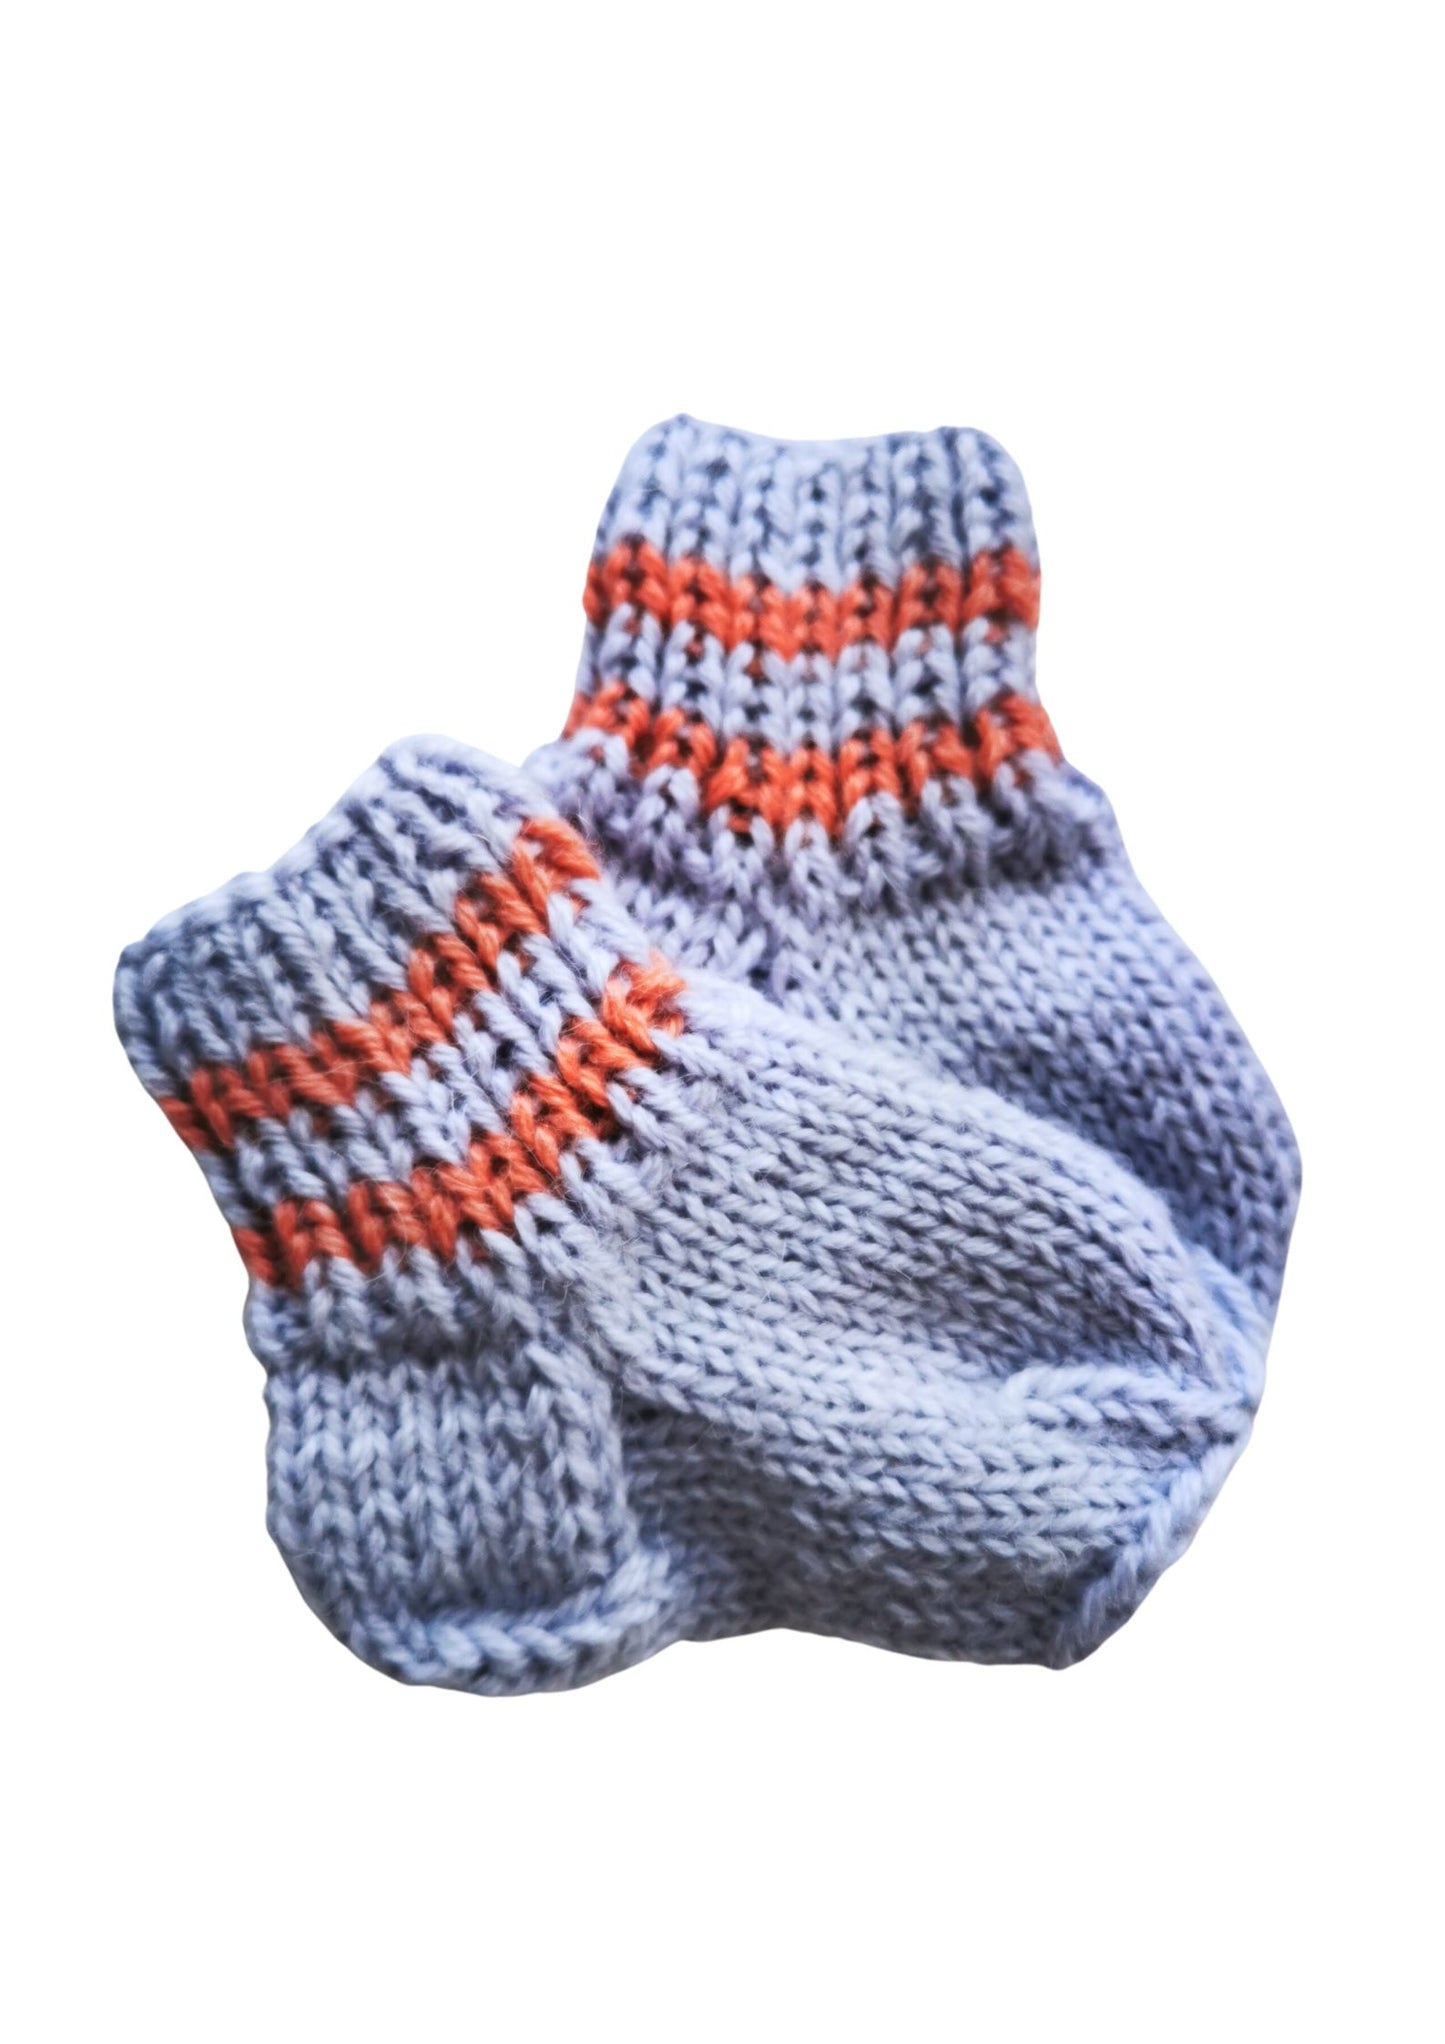 Baby socks (wool/alpaca)